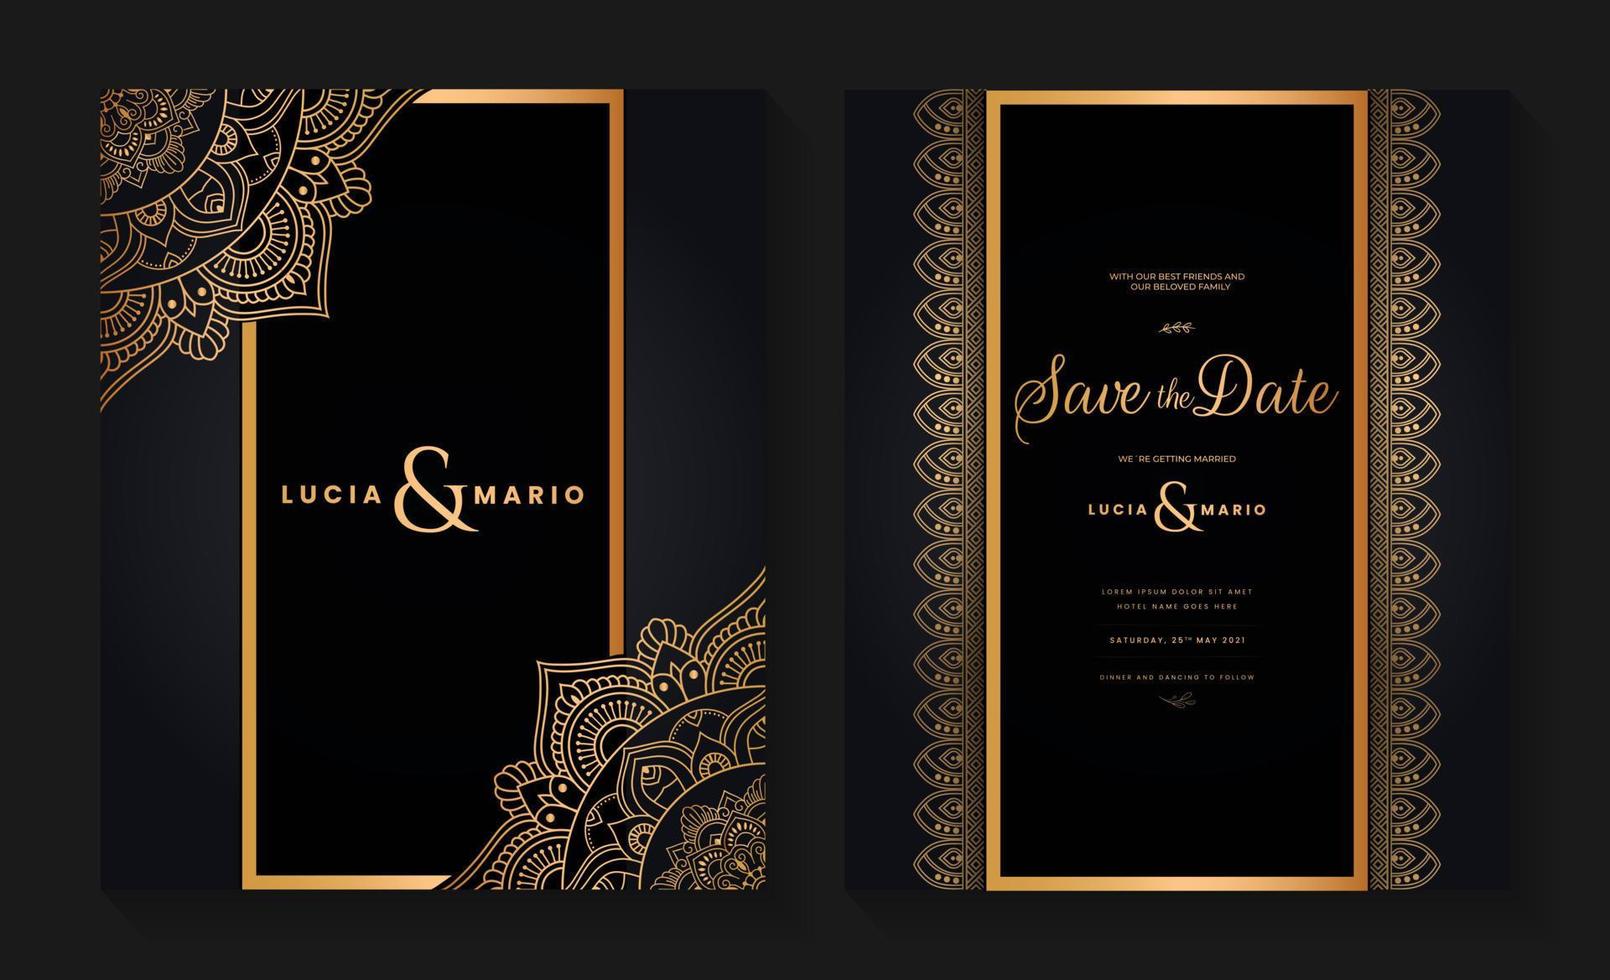 diseño de tarjeta de invitación de boda de lujo con mandala dorado y patrón abstracto, estilo de fondo árabe islámico oriental, mandala ornamental decorativa para impresión, afiche, portada, volante y pancarta. vector